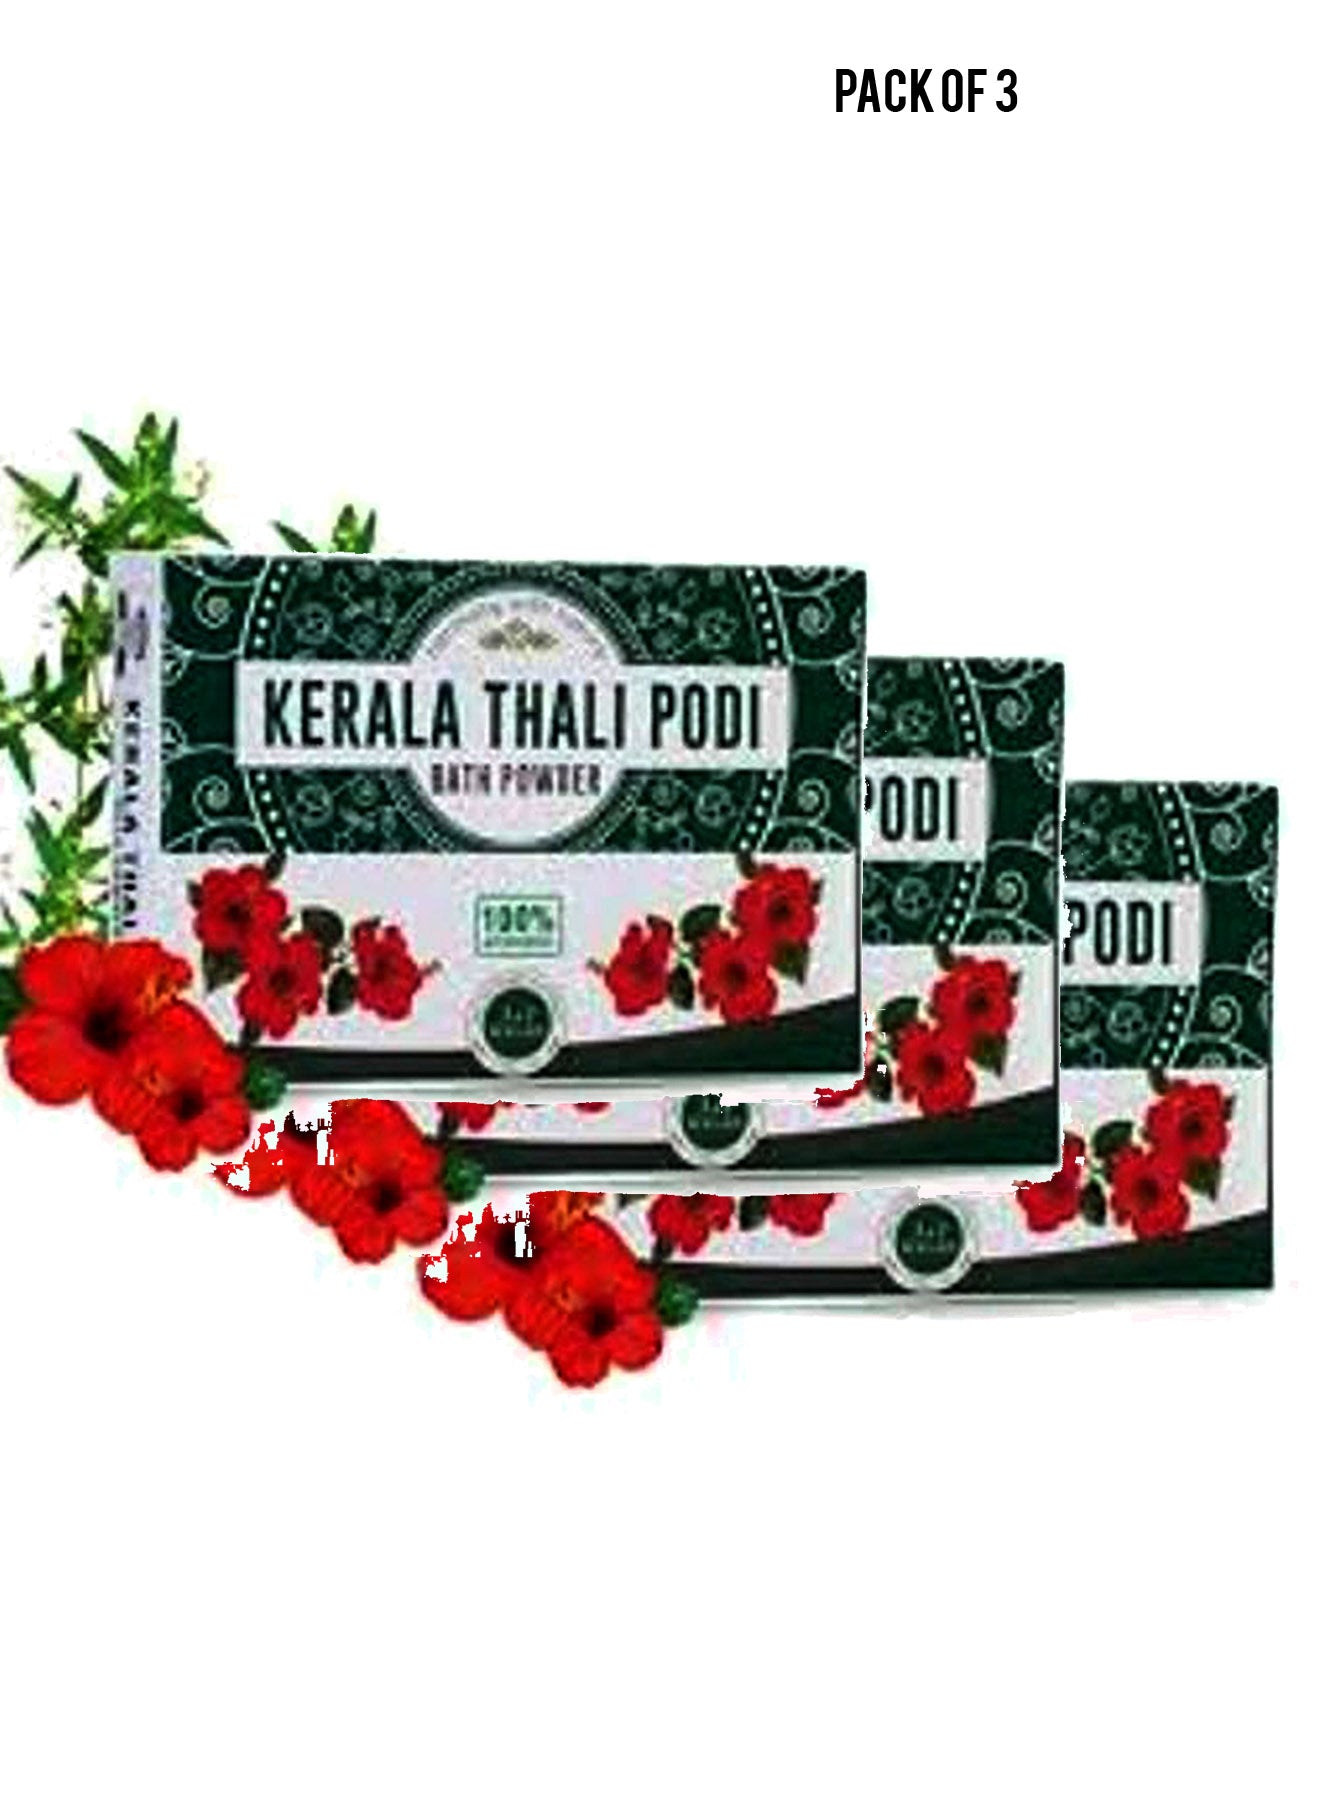 JJ Kalan Kerala Thali Podi Ayurvedic 100g Value Pack of 3 